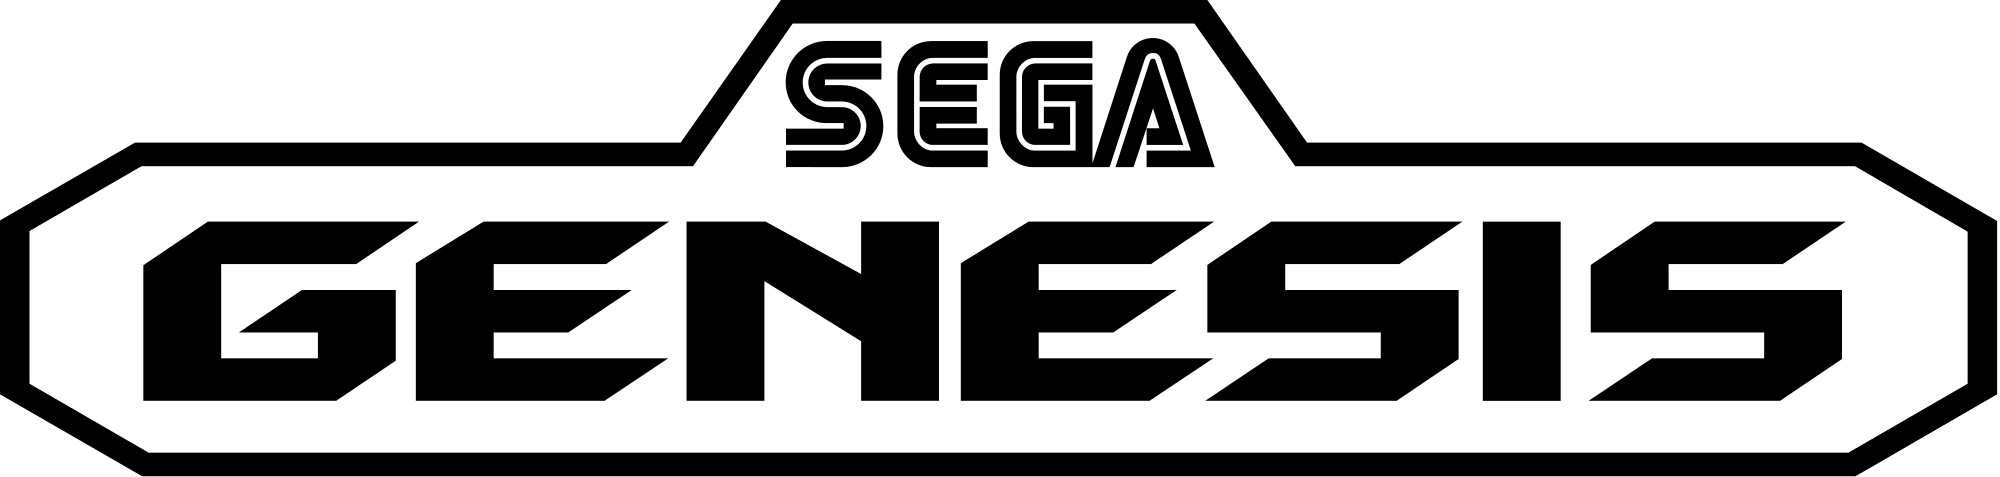 Sega Genesis Logo - Sega genesis logo.svg